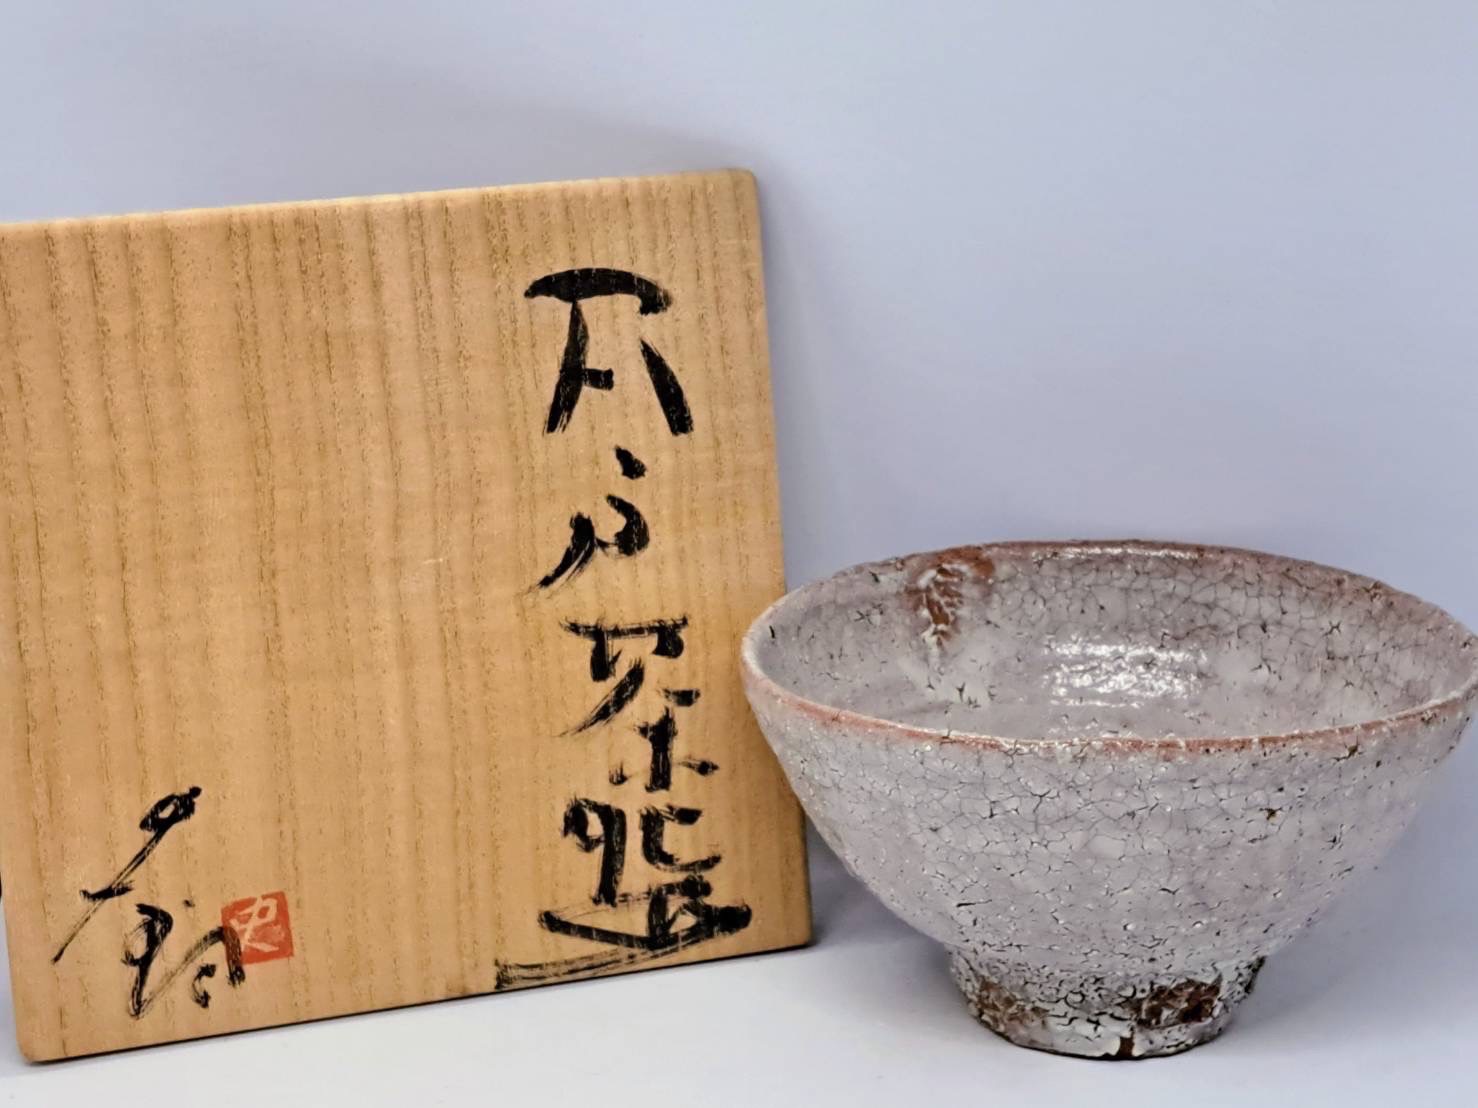 辻村史朗 最上位作「井戸茶碗」茶道具